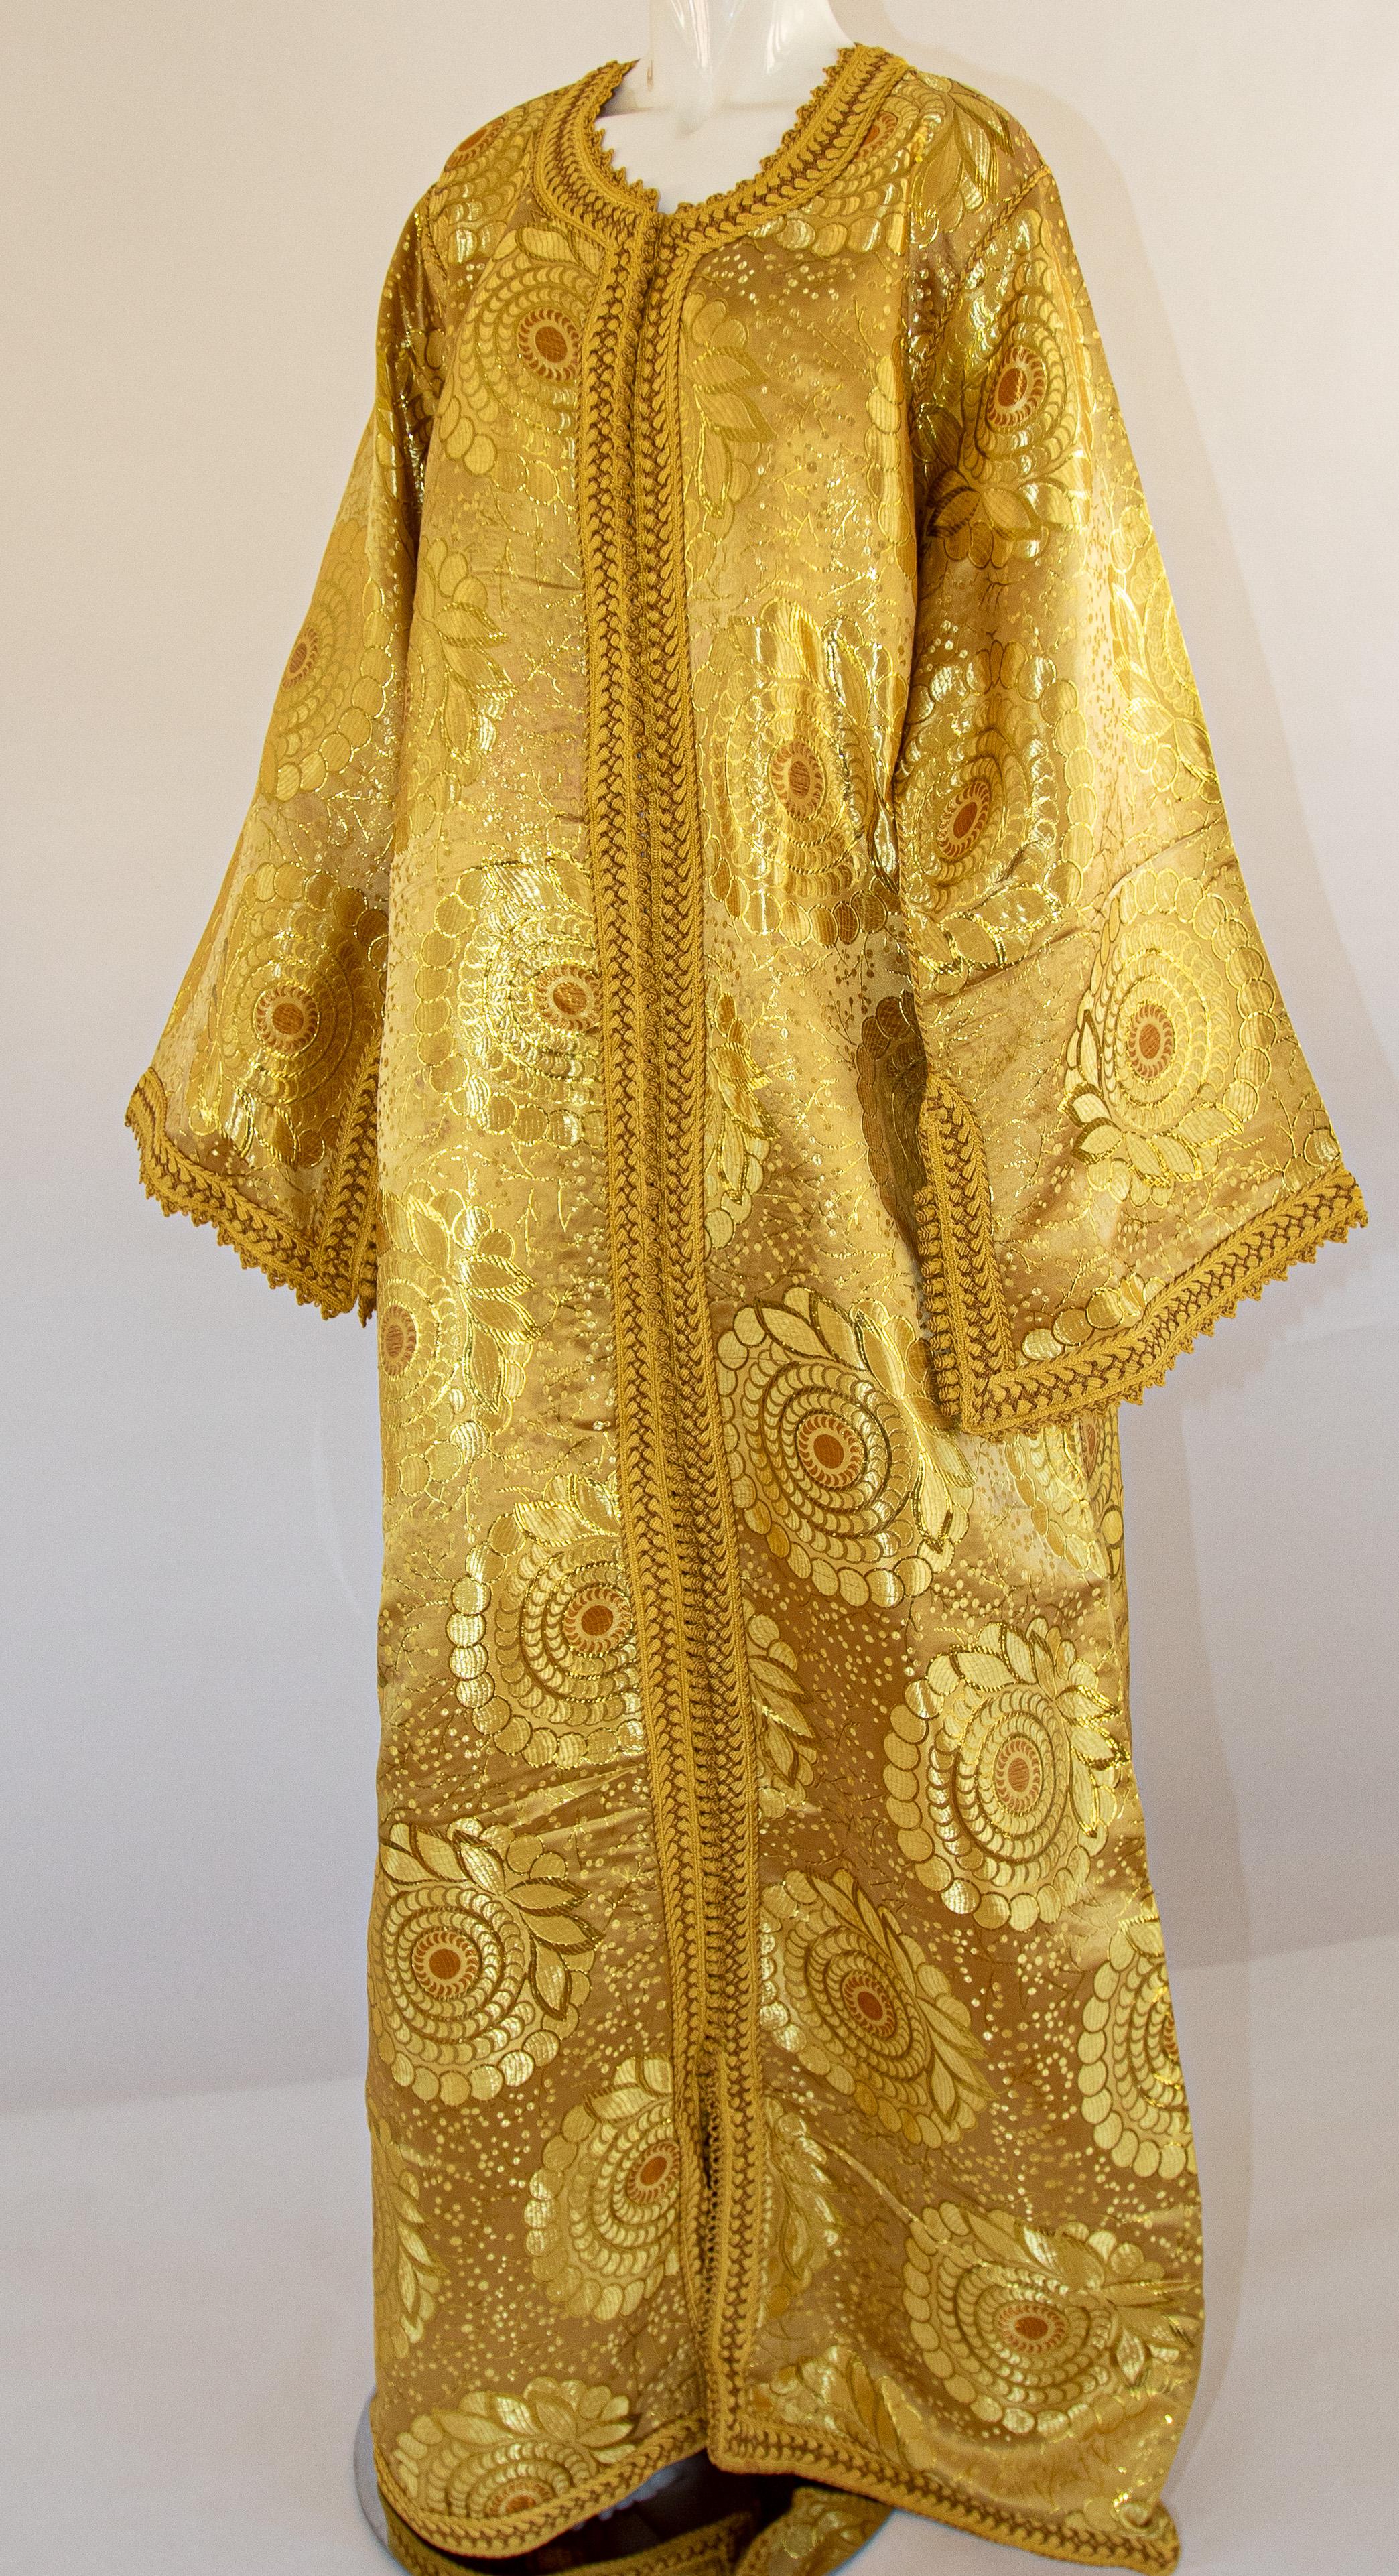 Robe caftan marocaine vintage exotique en brocart métallique doré, circa 1970.
Le luxueux caftan mauresque est conçu avec un brocart métallique or brillant.
Le devant de l'élégante robe caftan est orné de boutons dorés tissés et de boucles qui